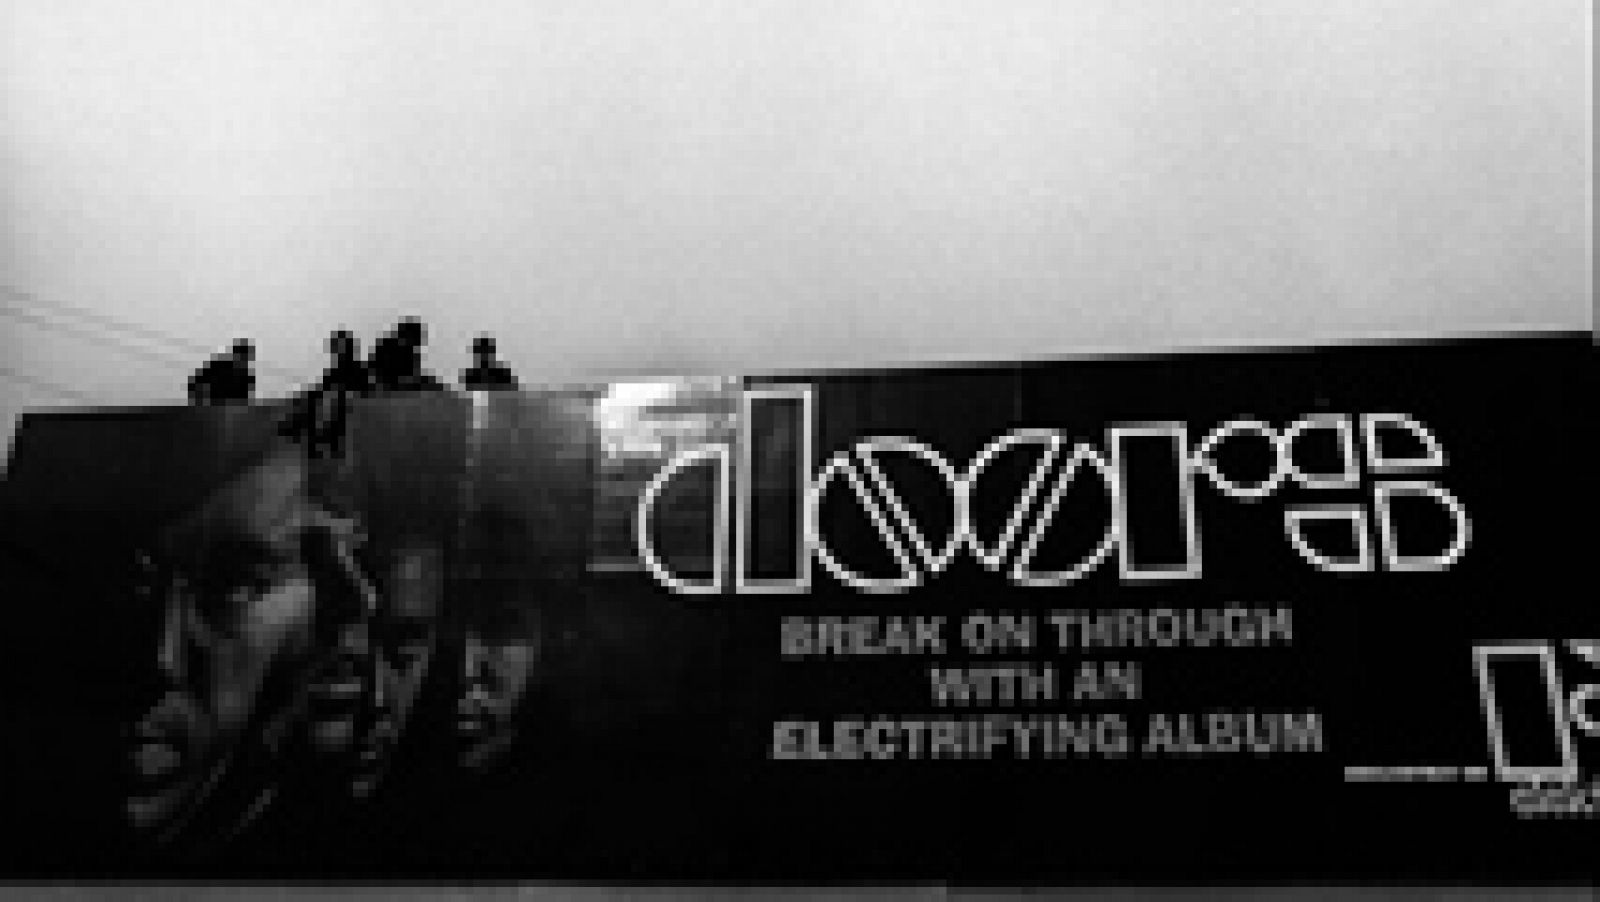 55 anos do álbum de estreia do The Doors